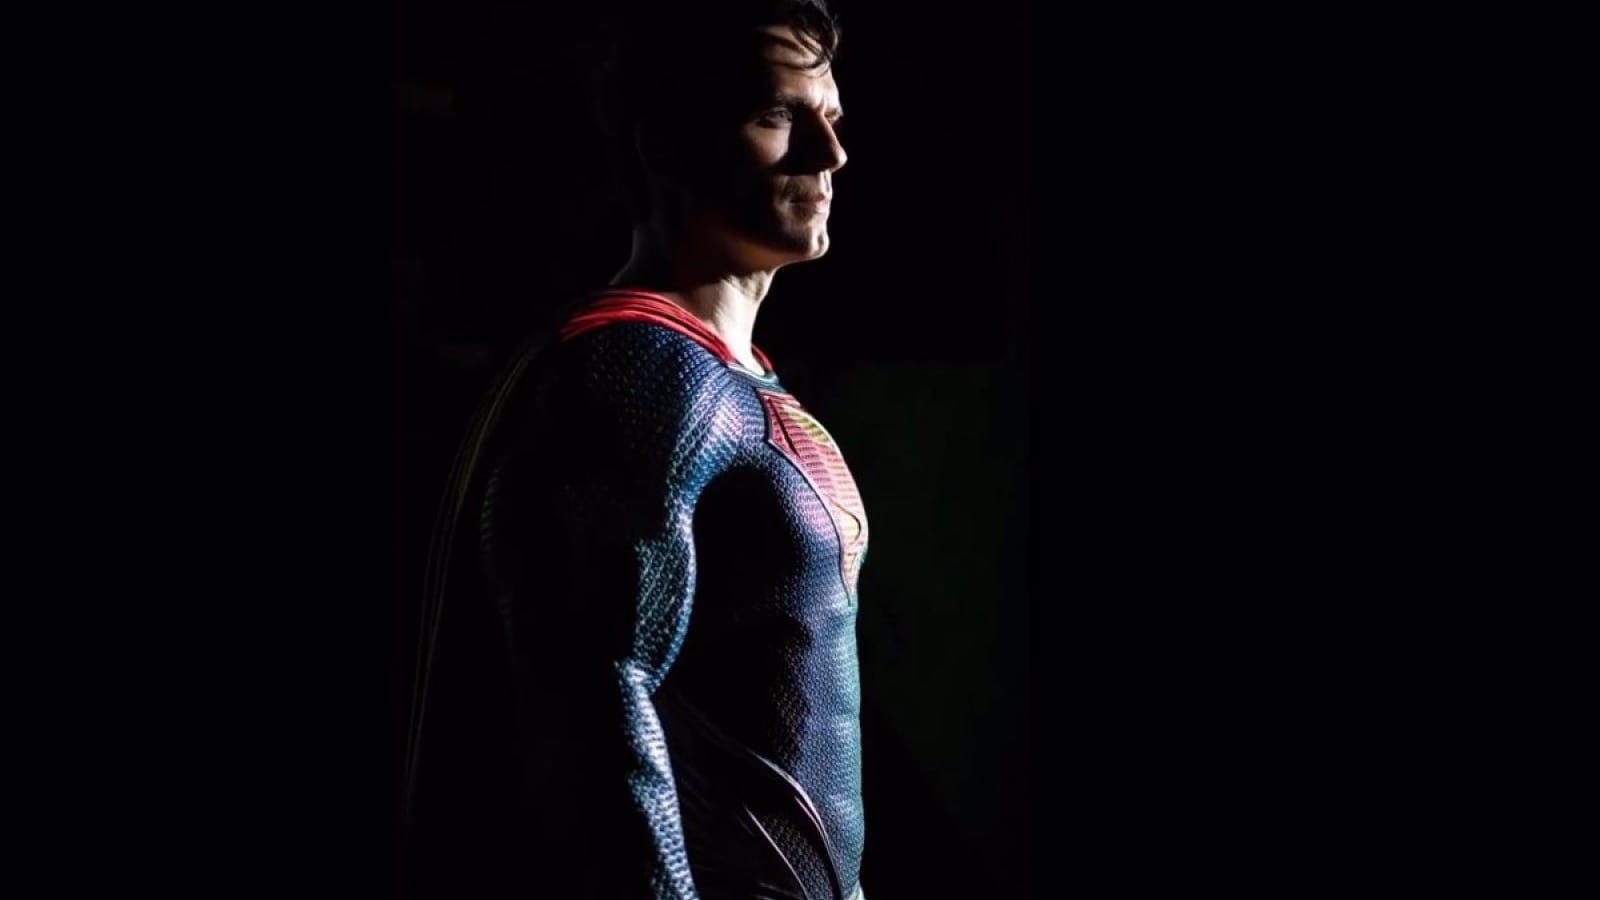 El británico Henry Cavill interpretó a Superman desde 2013